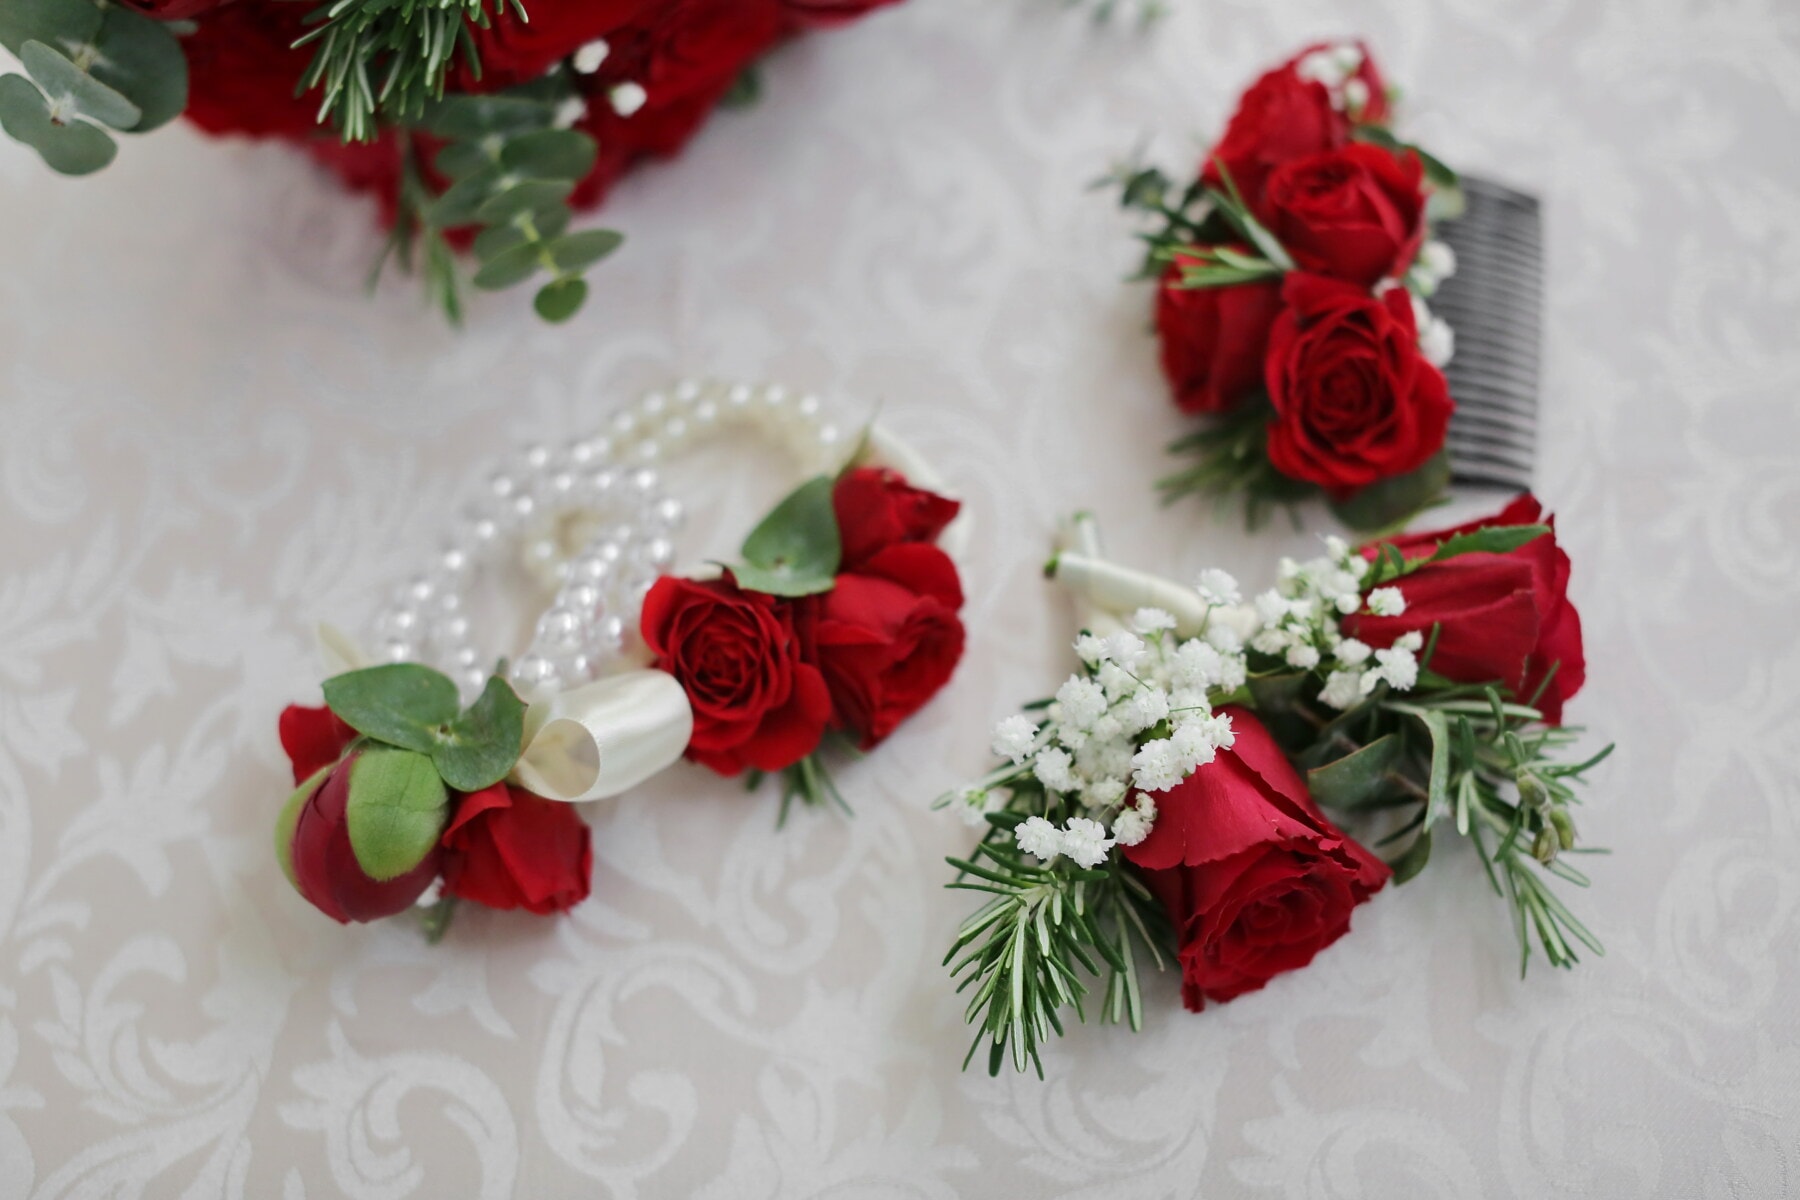 bouquet, miniature, decorative, roses, decoration, flower, arrangement, rose, celebration, romance